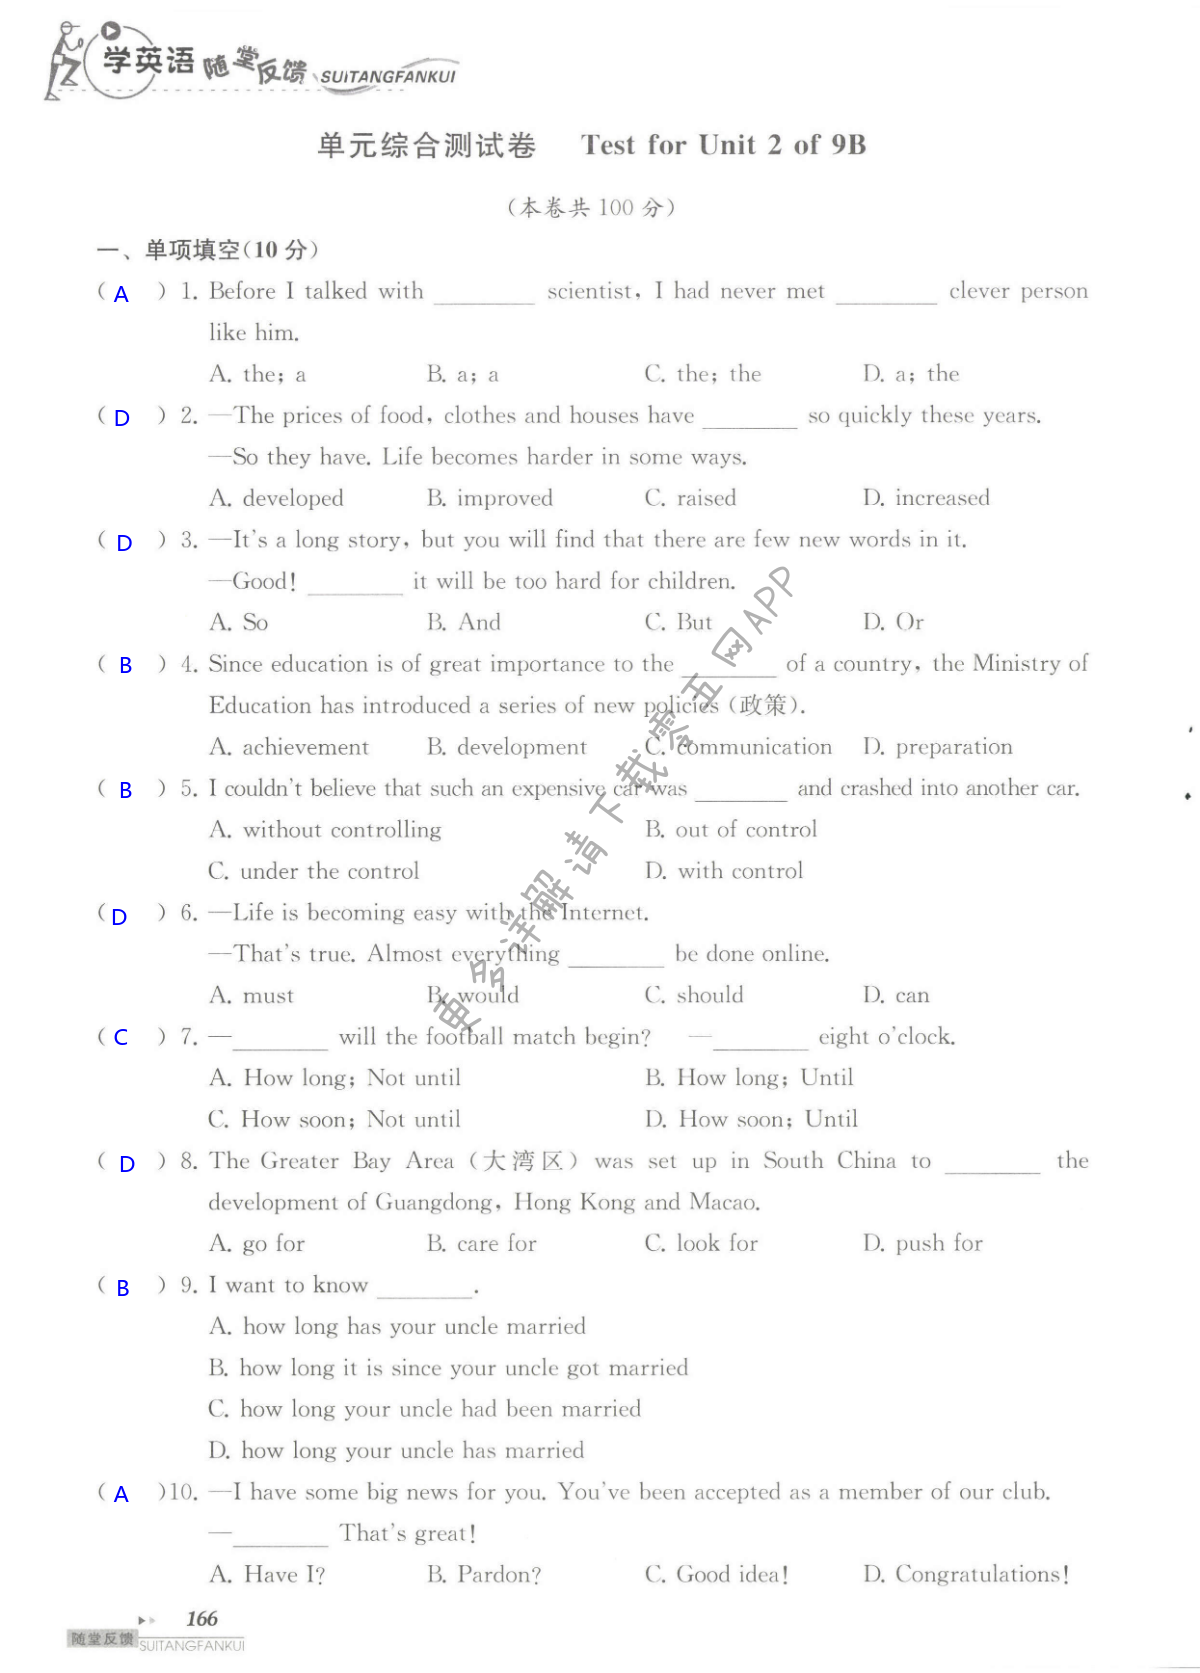 单元综合测试卷 Test for Unit 2 of 9B - 第166页